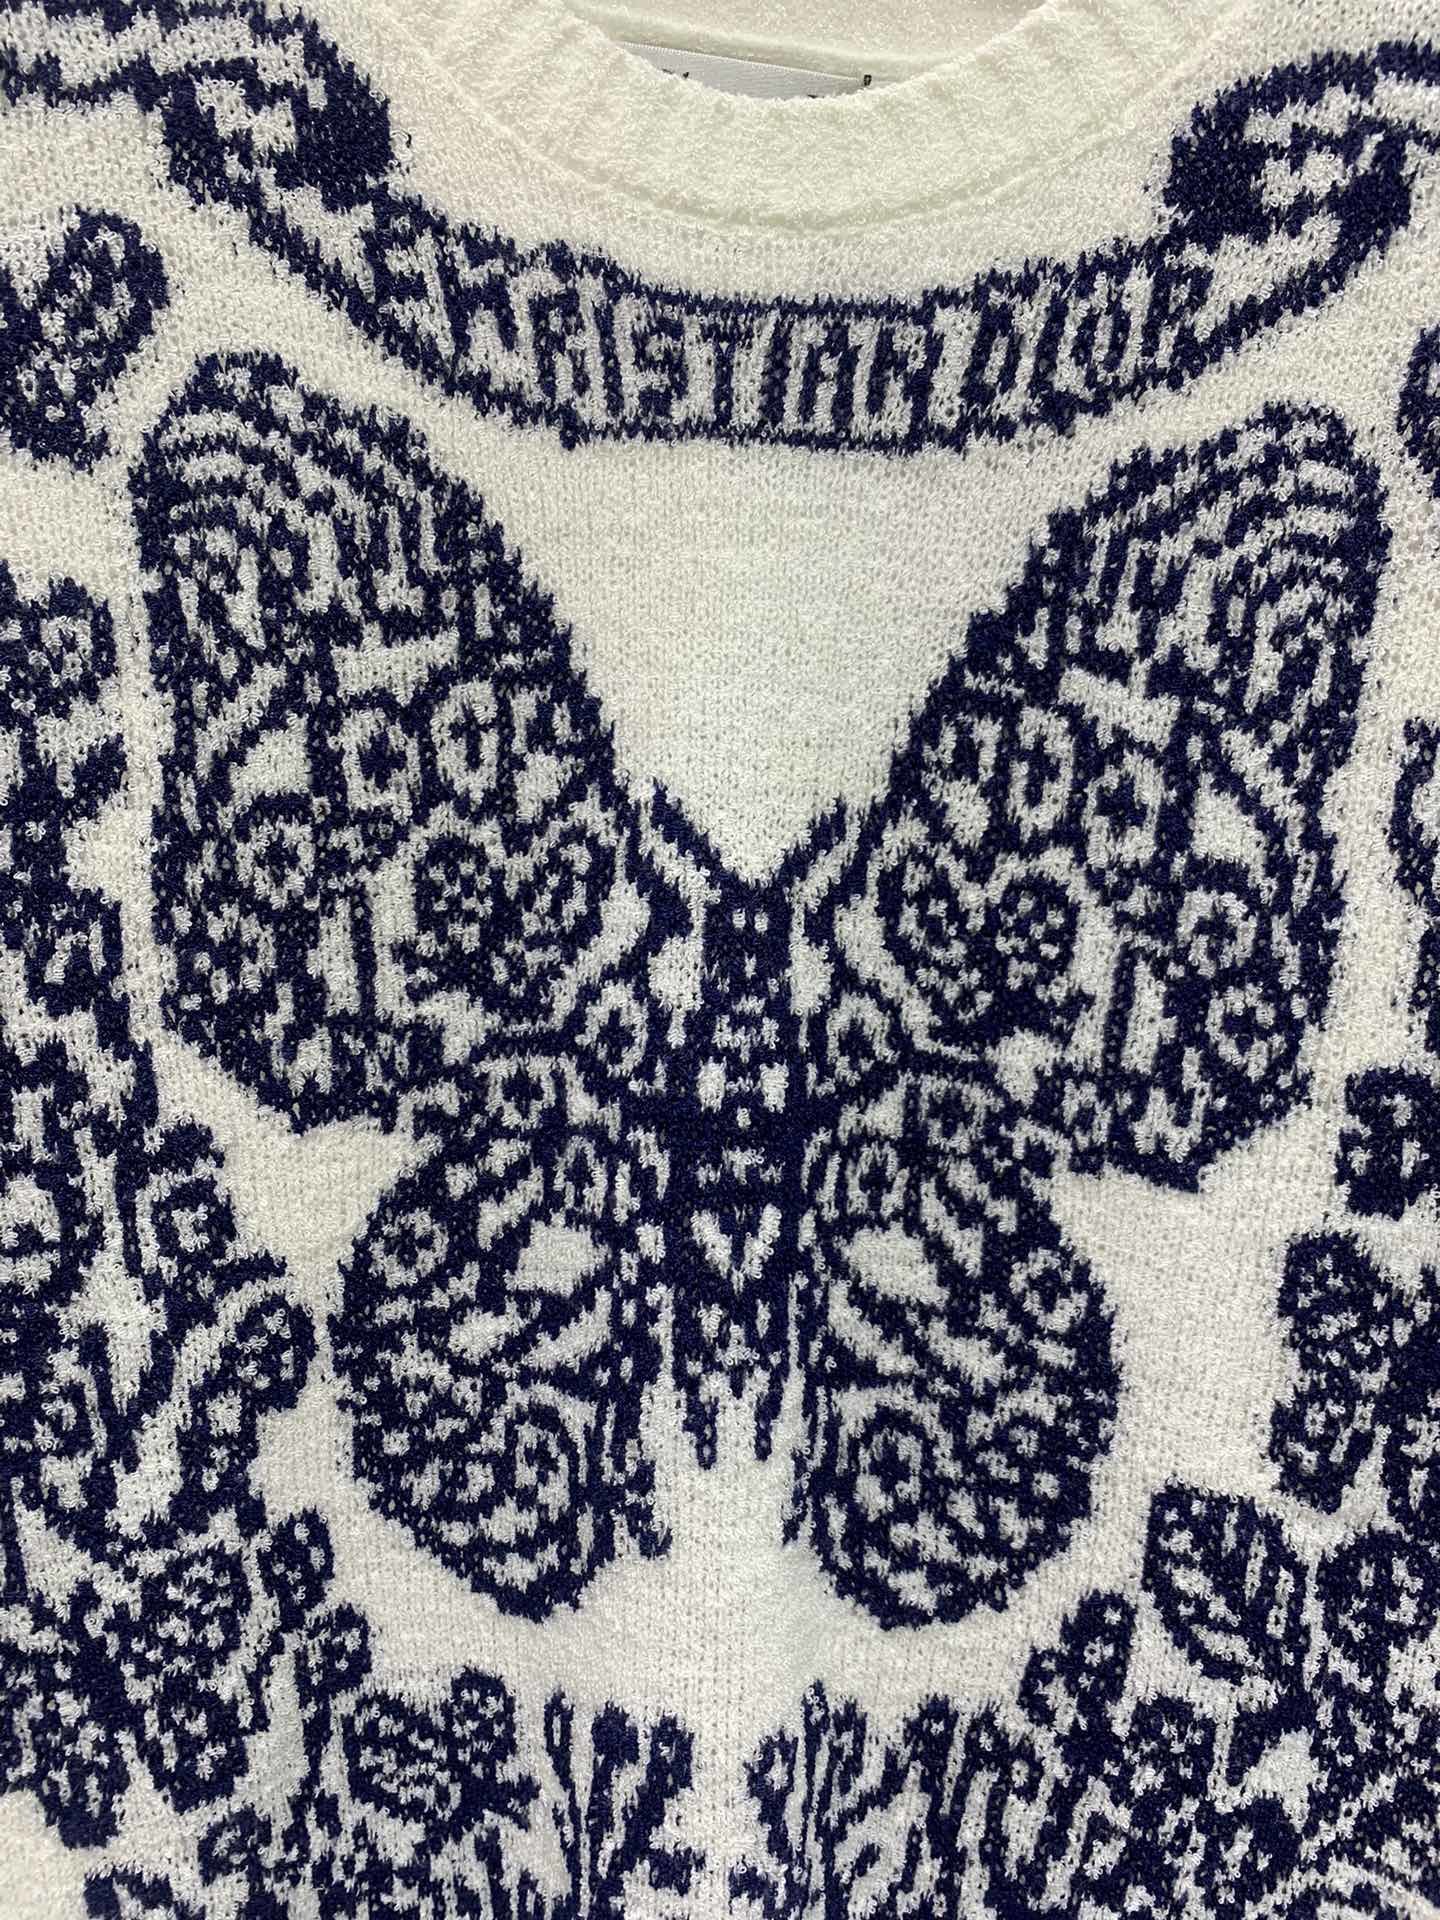 *新款蝴蝶图案针织上衣这件上衣的设计简直太精致了！大大的蝴蝶图案轻盈又可爱仿佛随时都能飞起来而且它的颜色